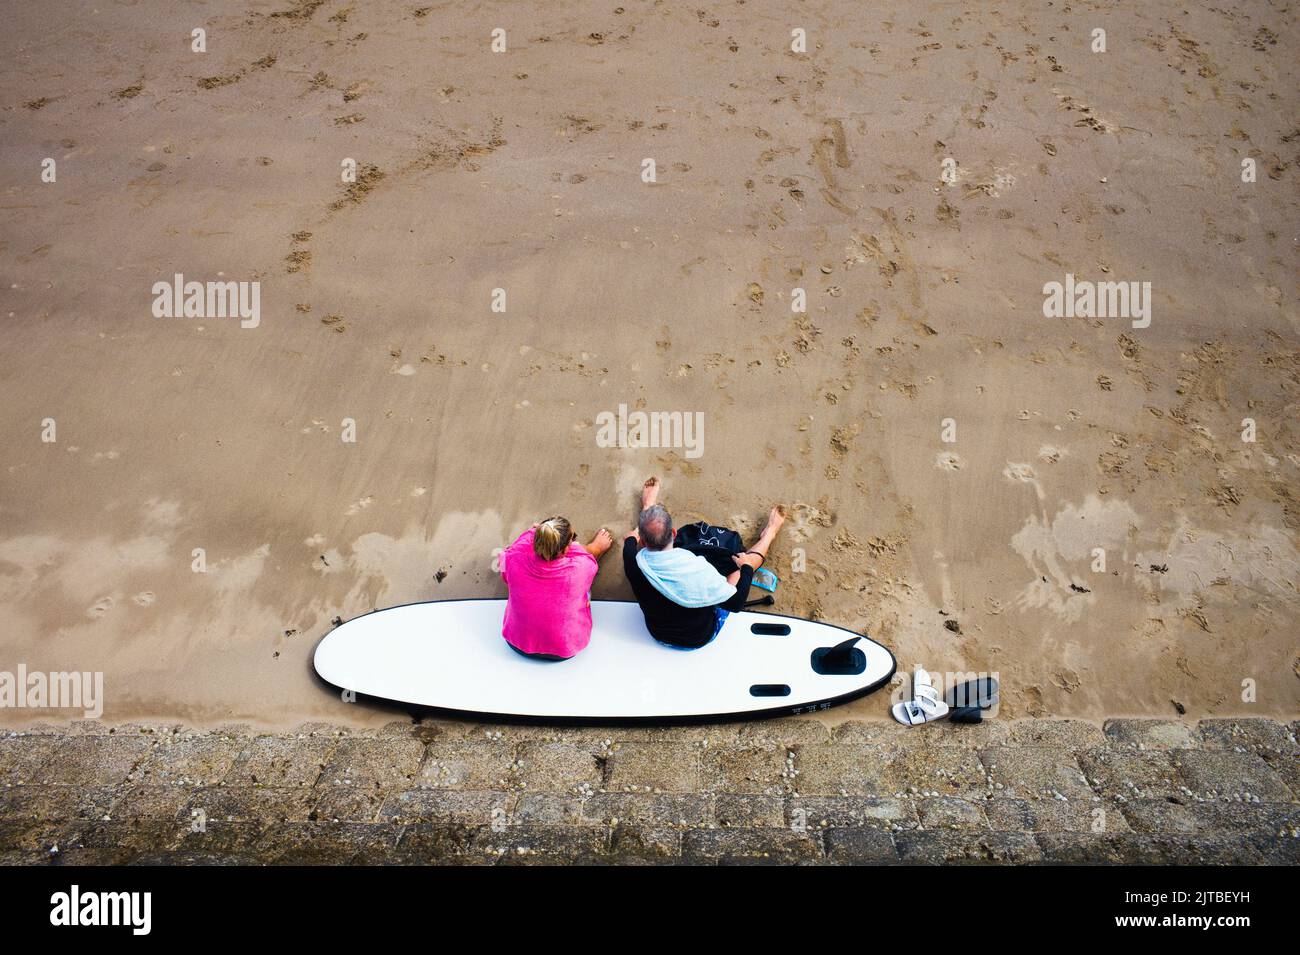 Mirando hacia abajo a una pareja mayor sentada en una tabla de surf en una playa de arena Foto de stock